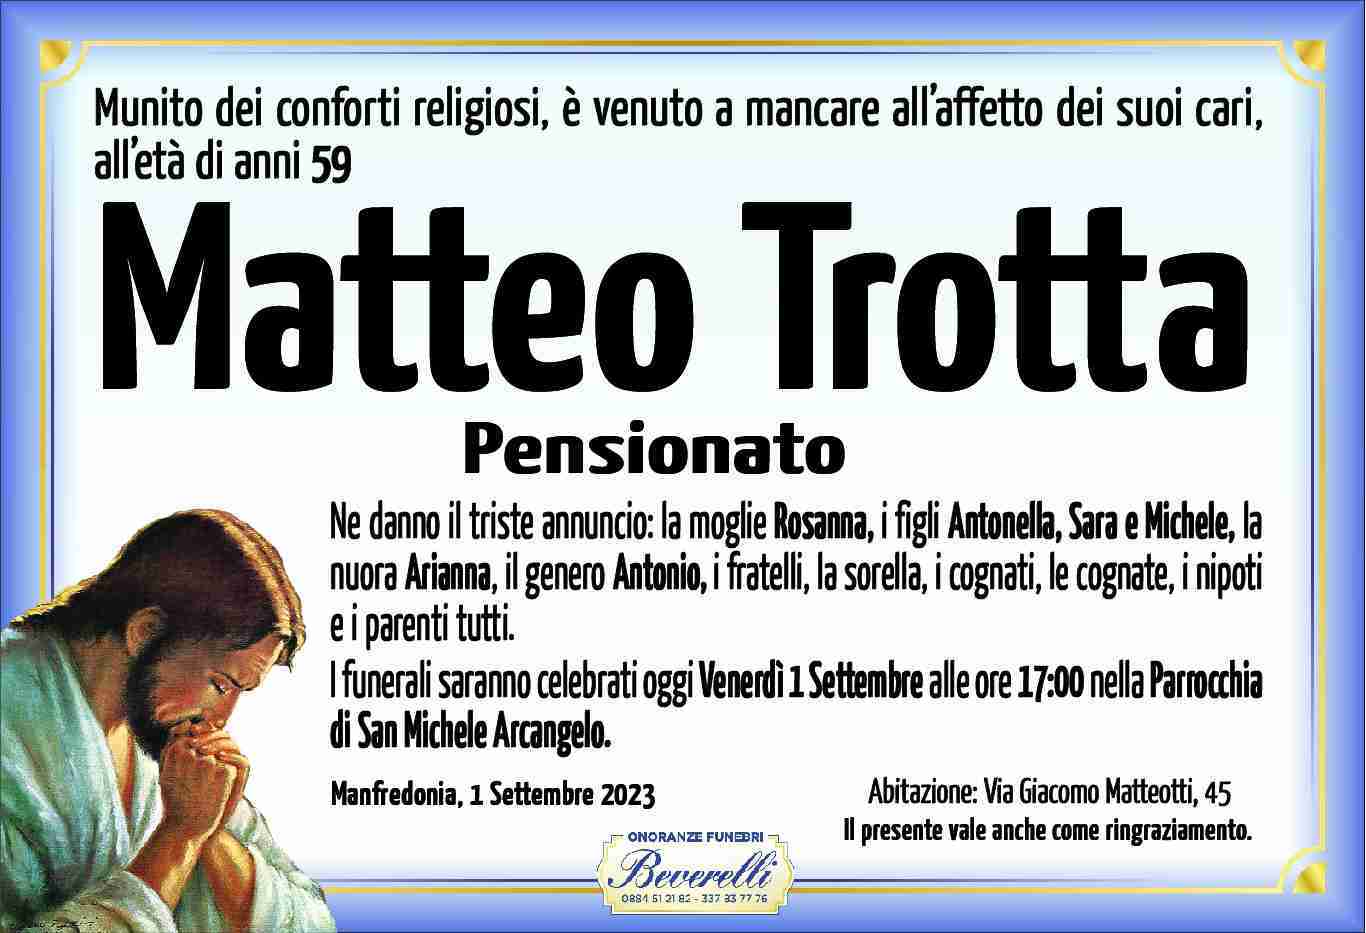 Matteo Trotta